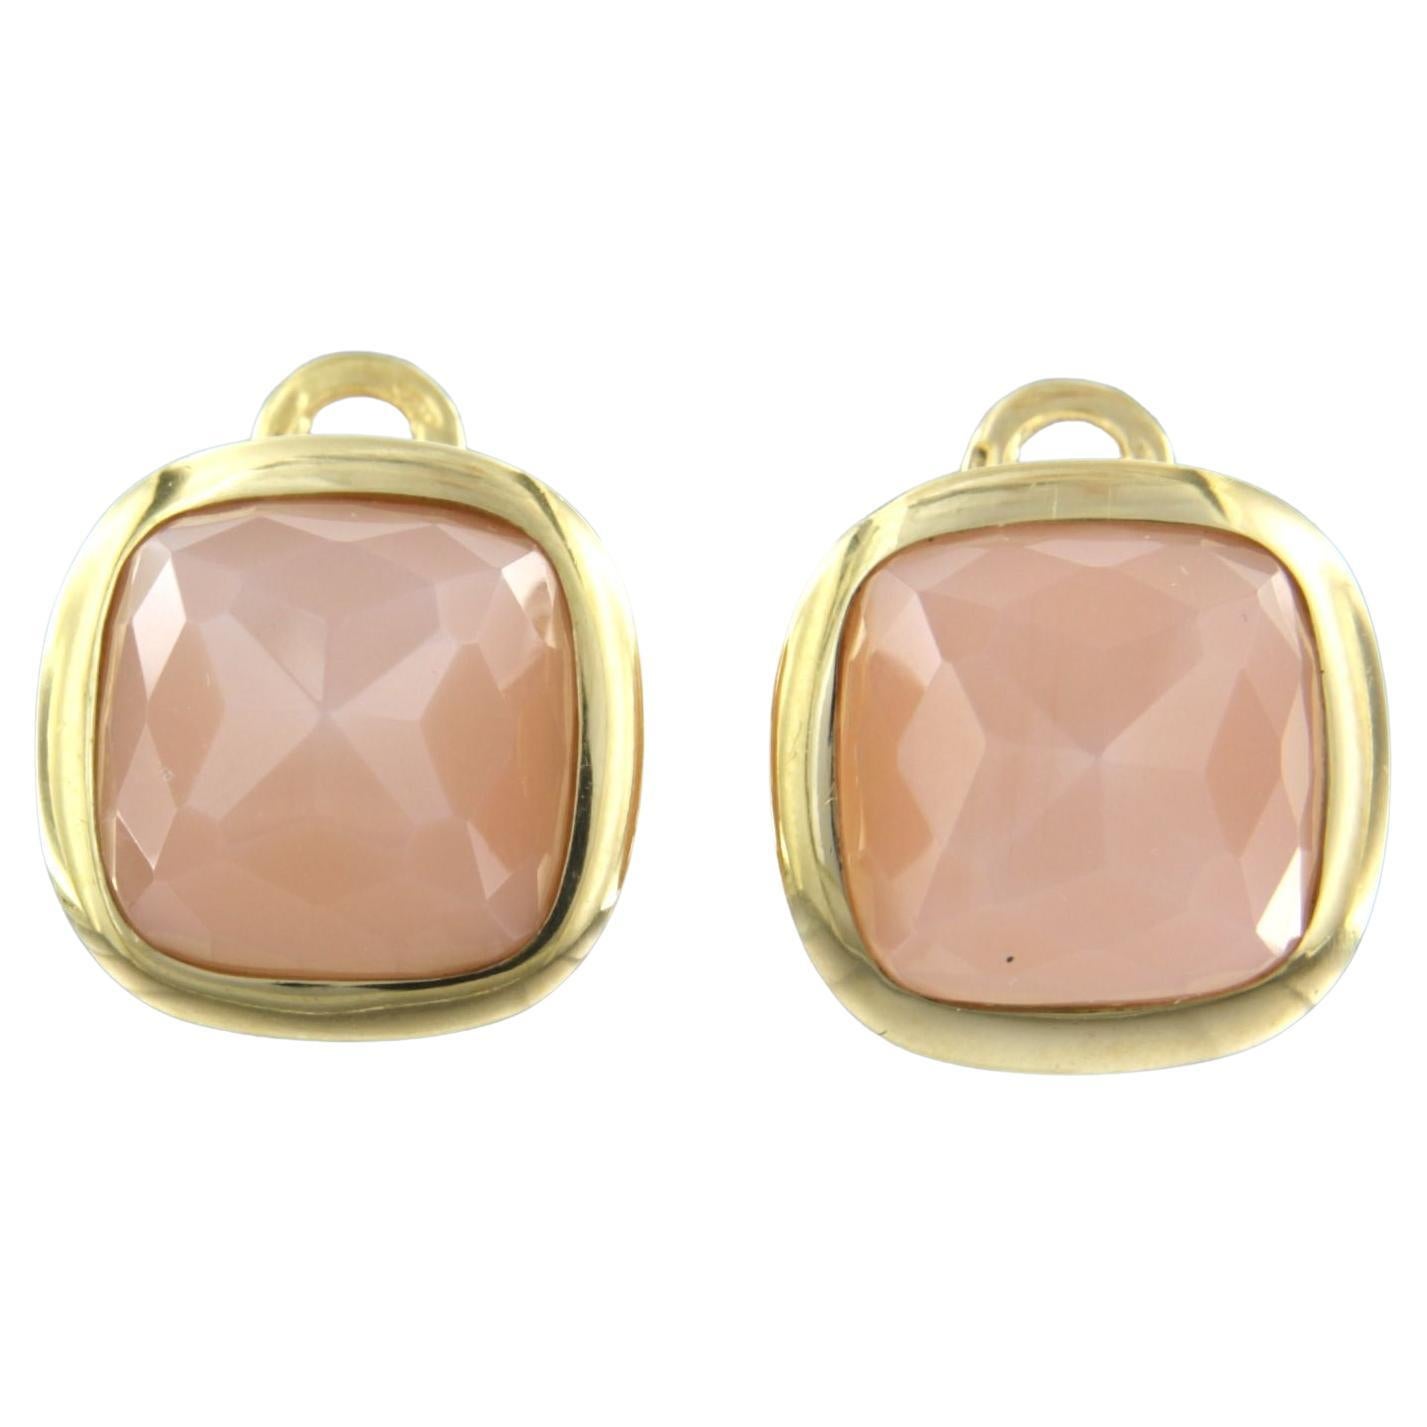 Clips d'oreilles en or jaune 18k sertis de quartz rose - taille 1,8 cm x 1,8 cm